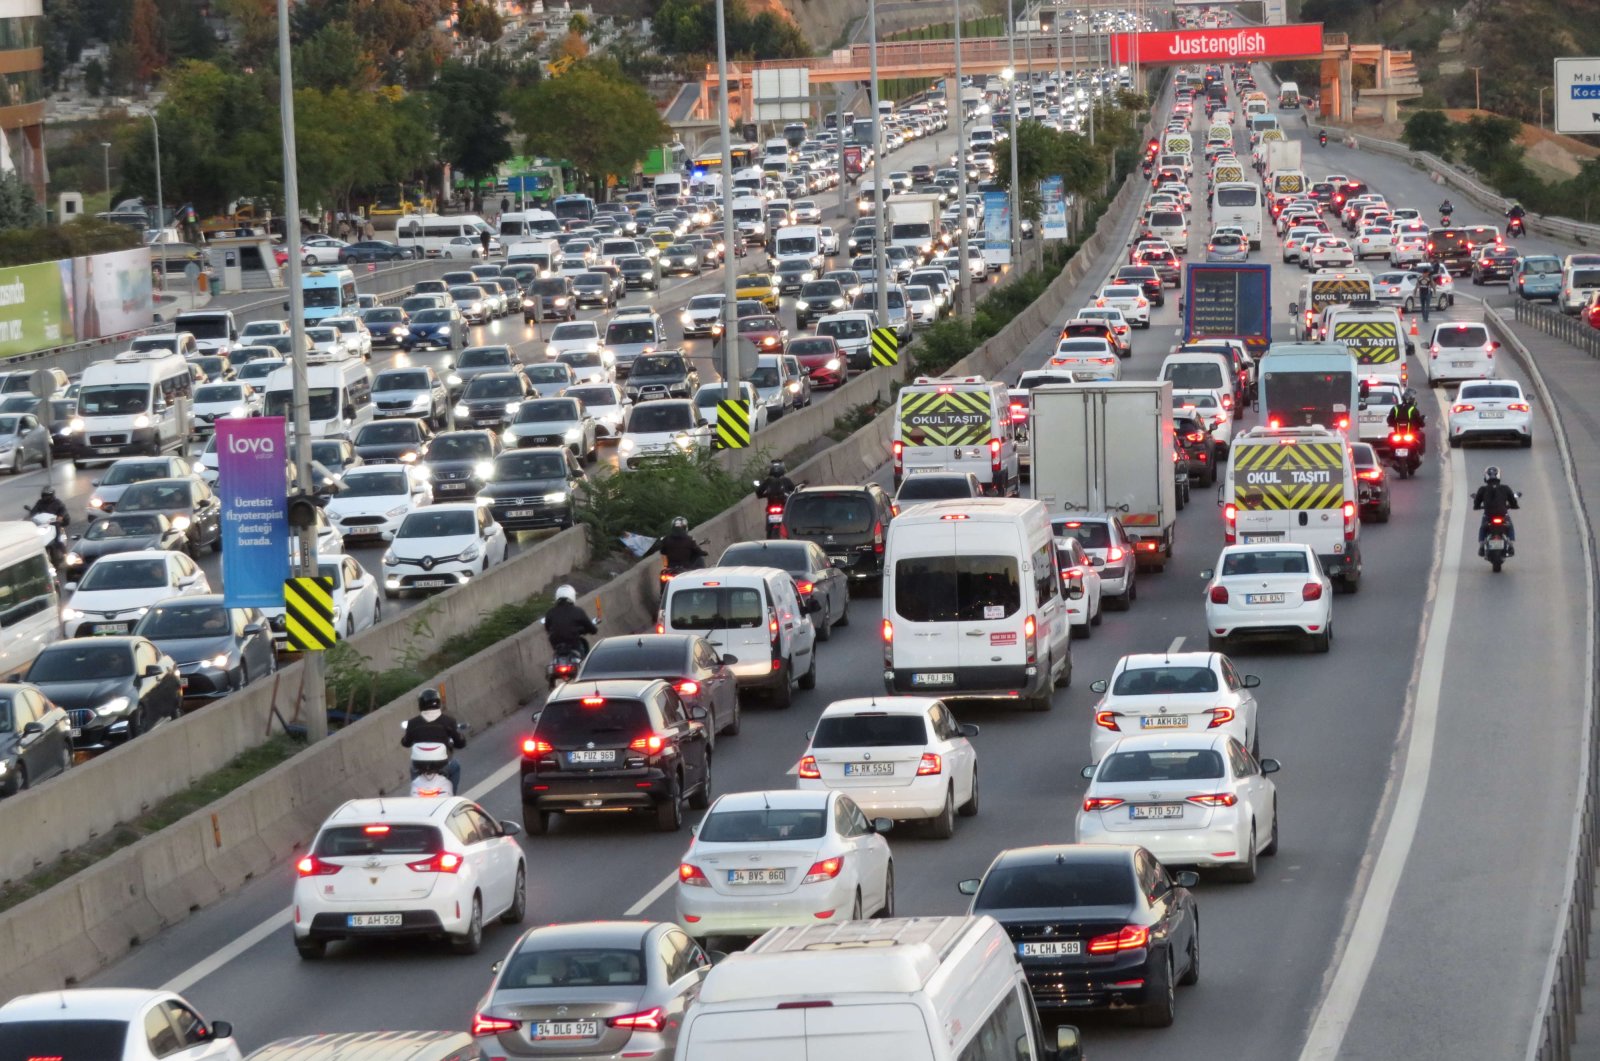 Lalu lintas memburuk di Istanbul yang padat penduduk, seperti halnya polusi